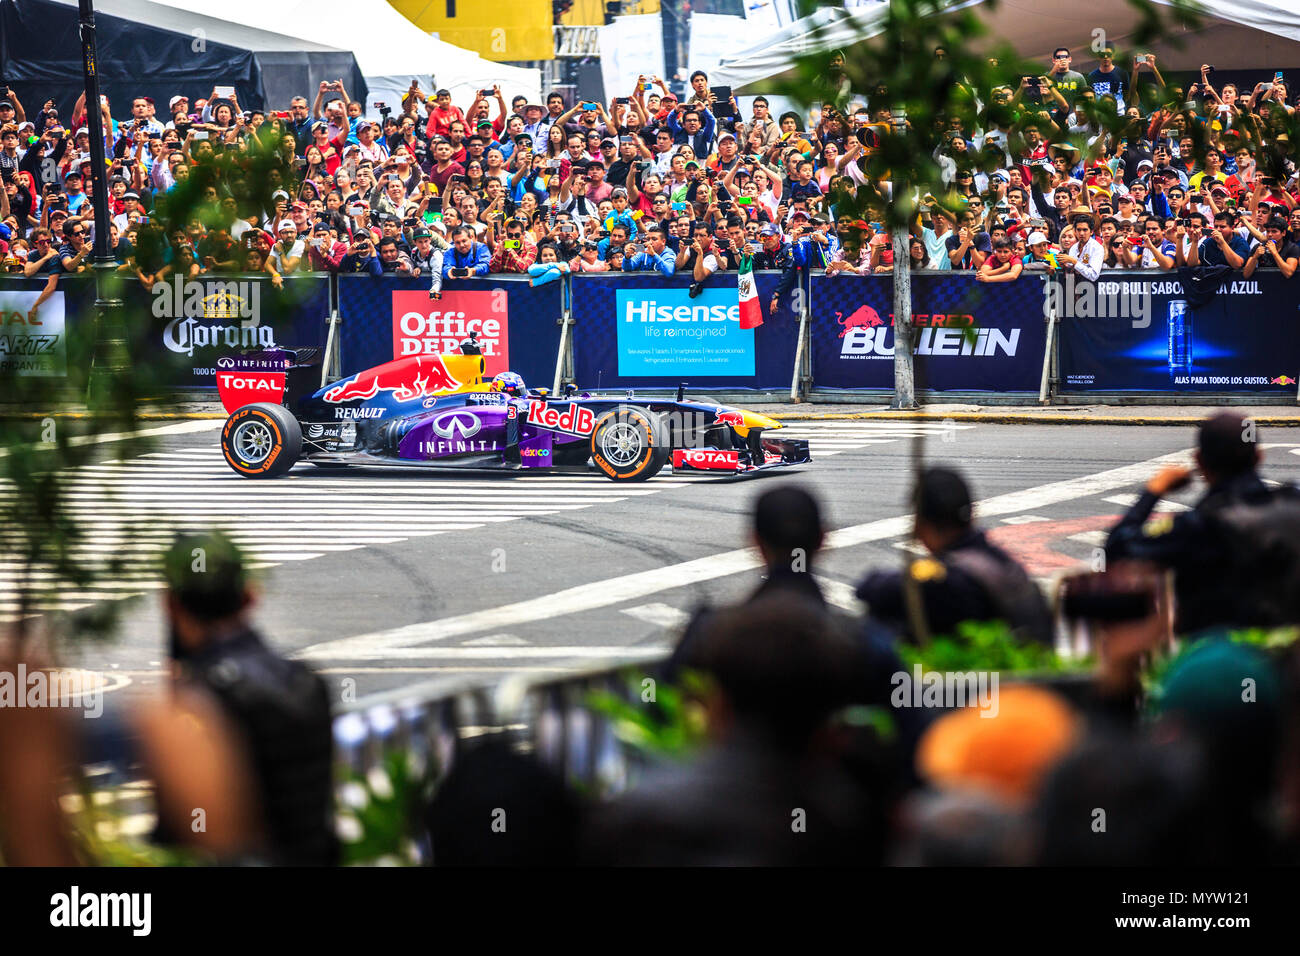 Mexico City, Mexico - June 27, 2015: Daniel Ricciardo driving around the Mexico City Zocalo Square at the Infiniti Red Bull Racing F1 Showrun. Stock Photo